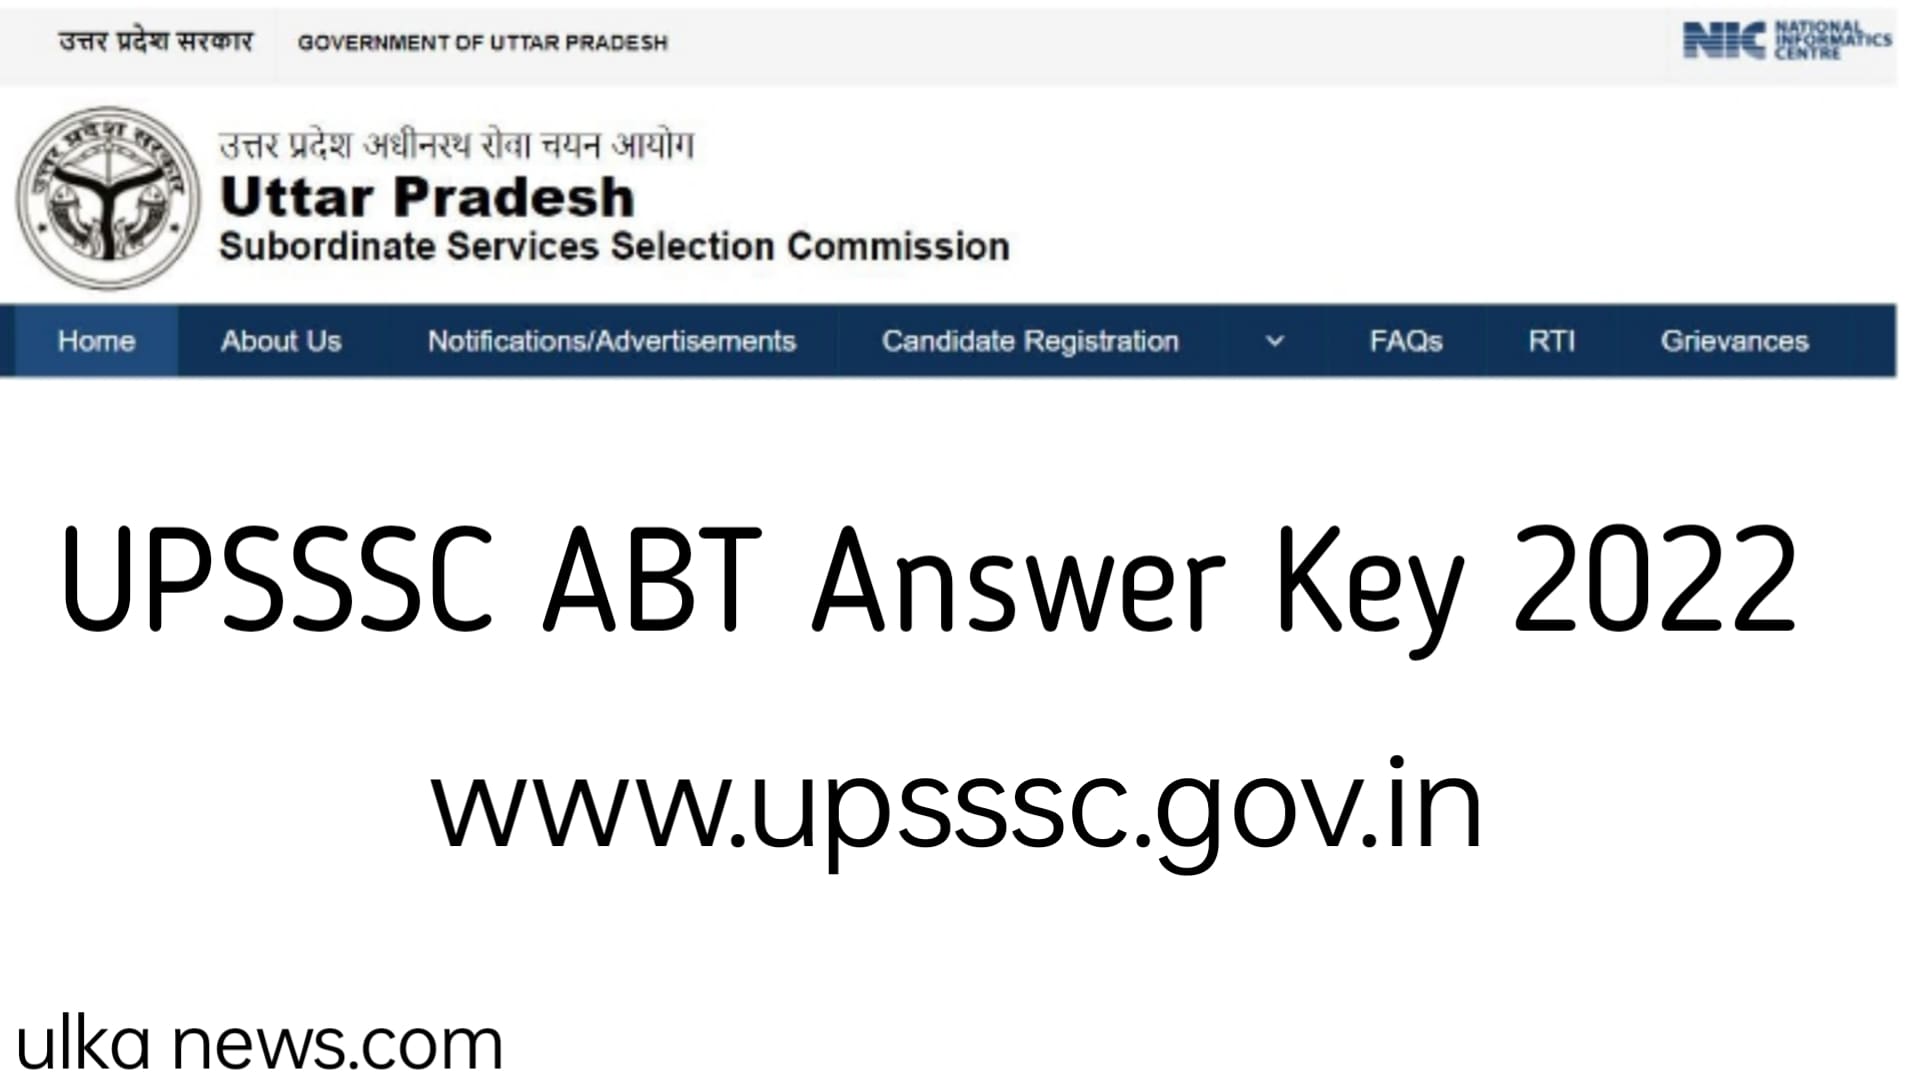 UPSSSC ABT Answer Key 2022 – Exam Analysis, www.upsssc.gov.in, Objections